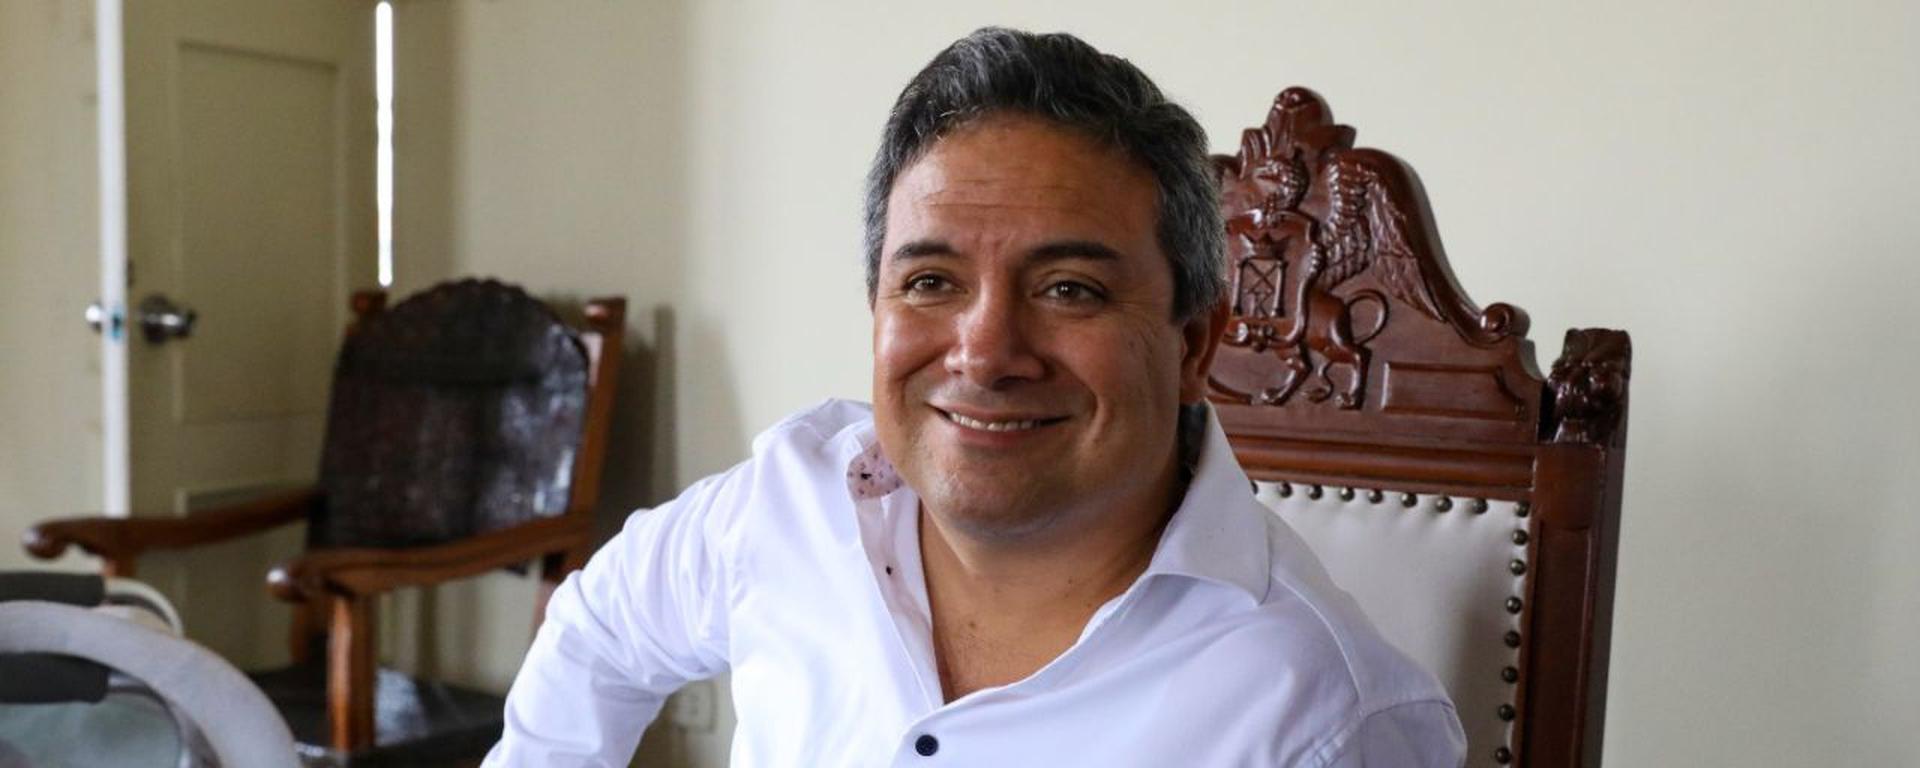 Fernández Bazán, el alcalde de Trujillo con múltiples denuncias por expresiones y actos misóginos